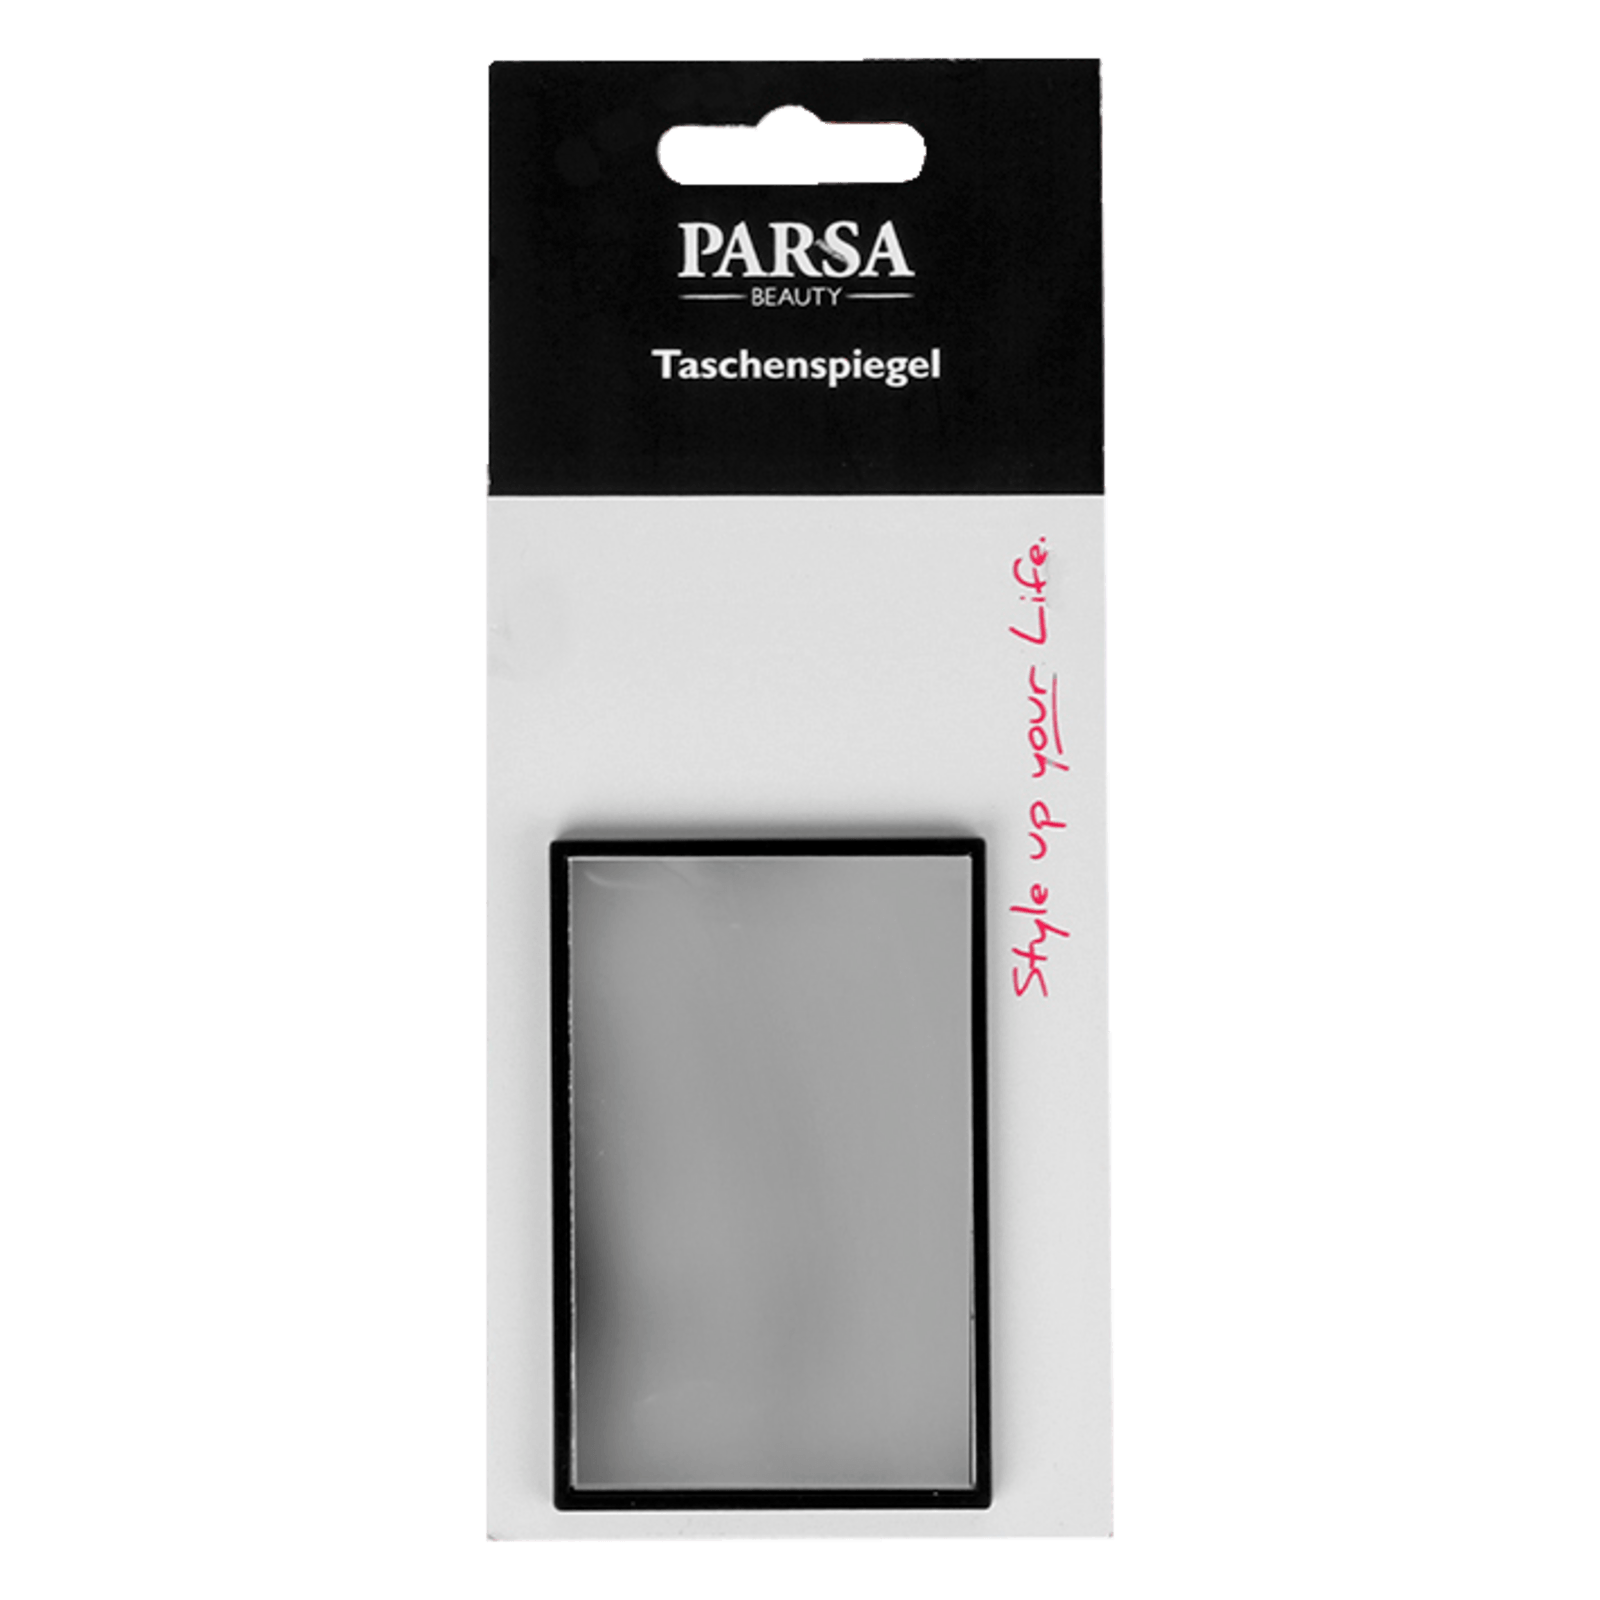 Parsa Saugnapf-Spiegel, schwarz, matt 10-fach Vergrösserung 1 Stück